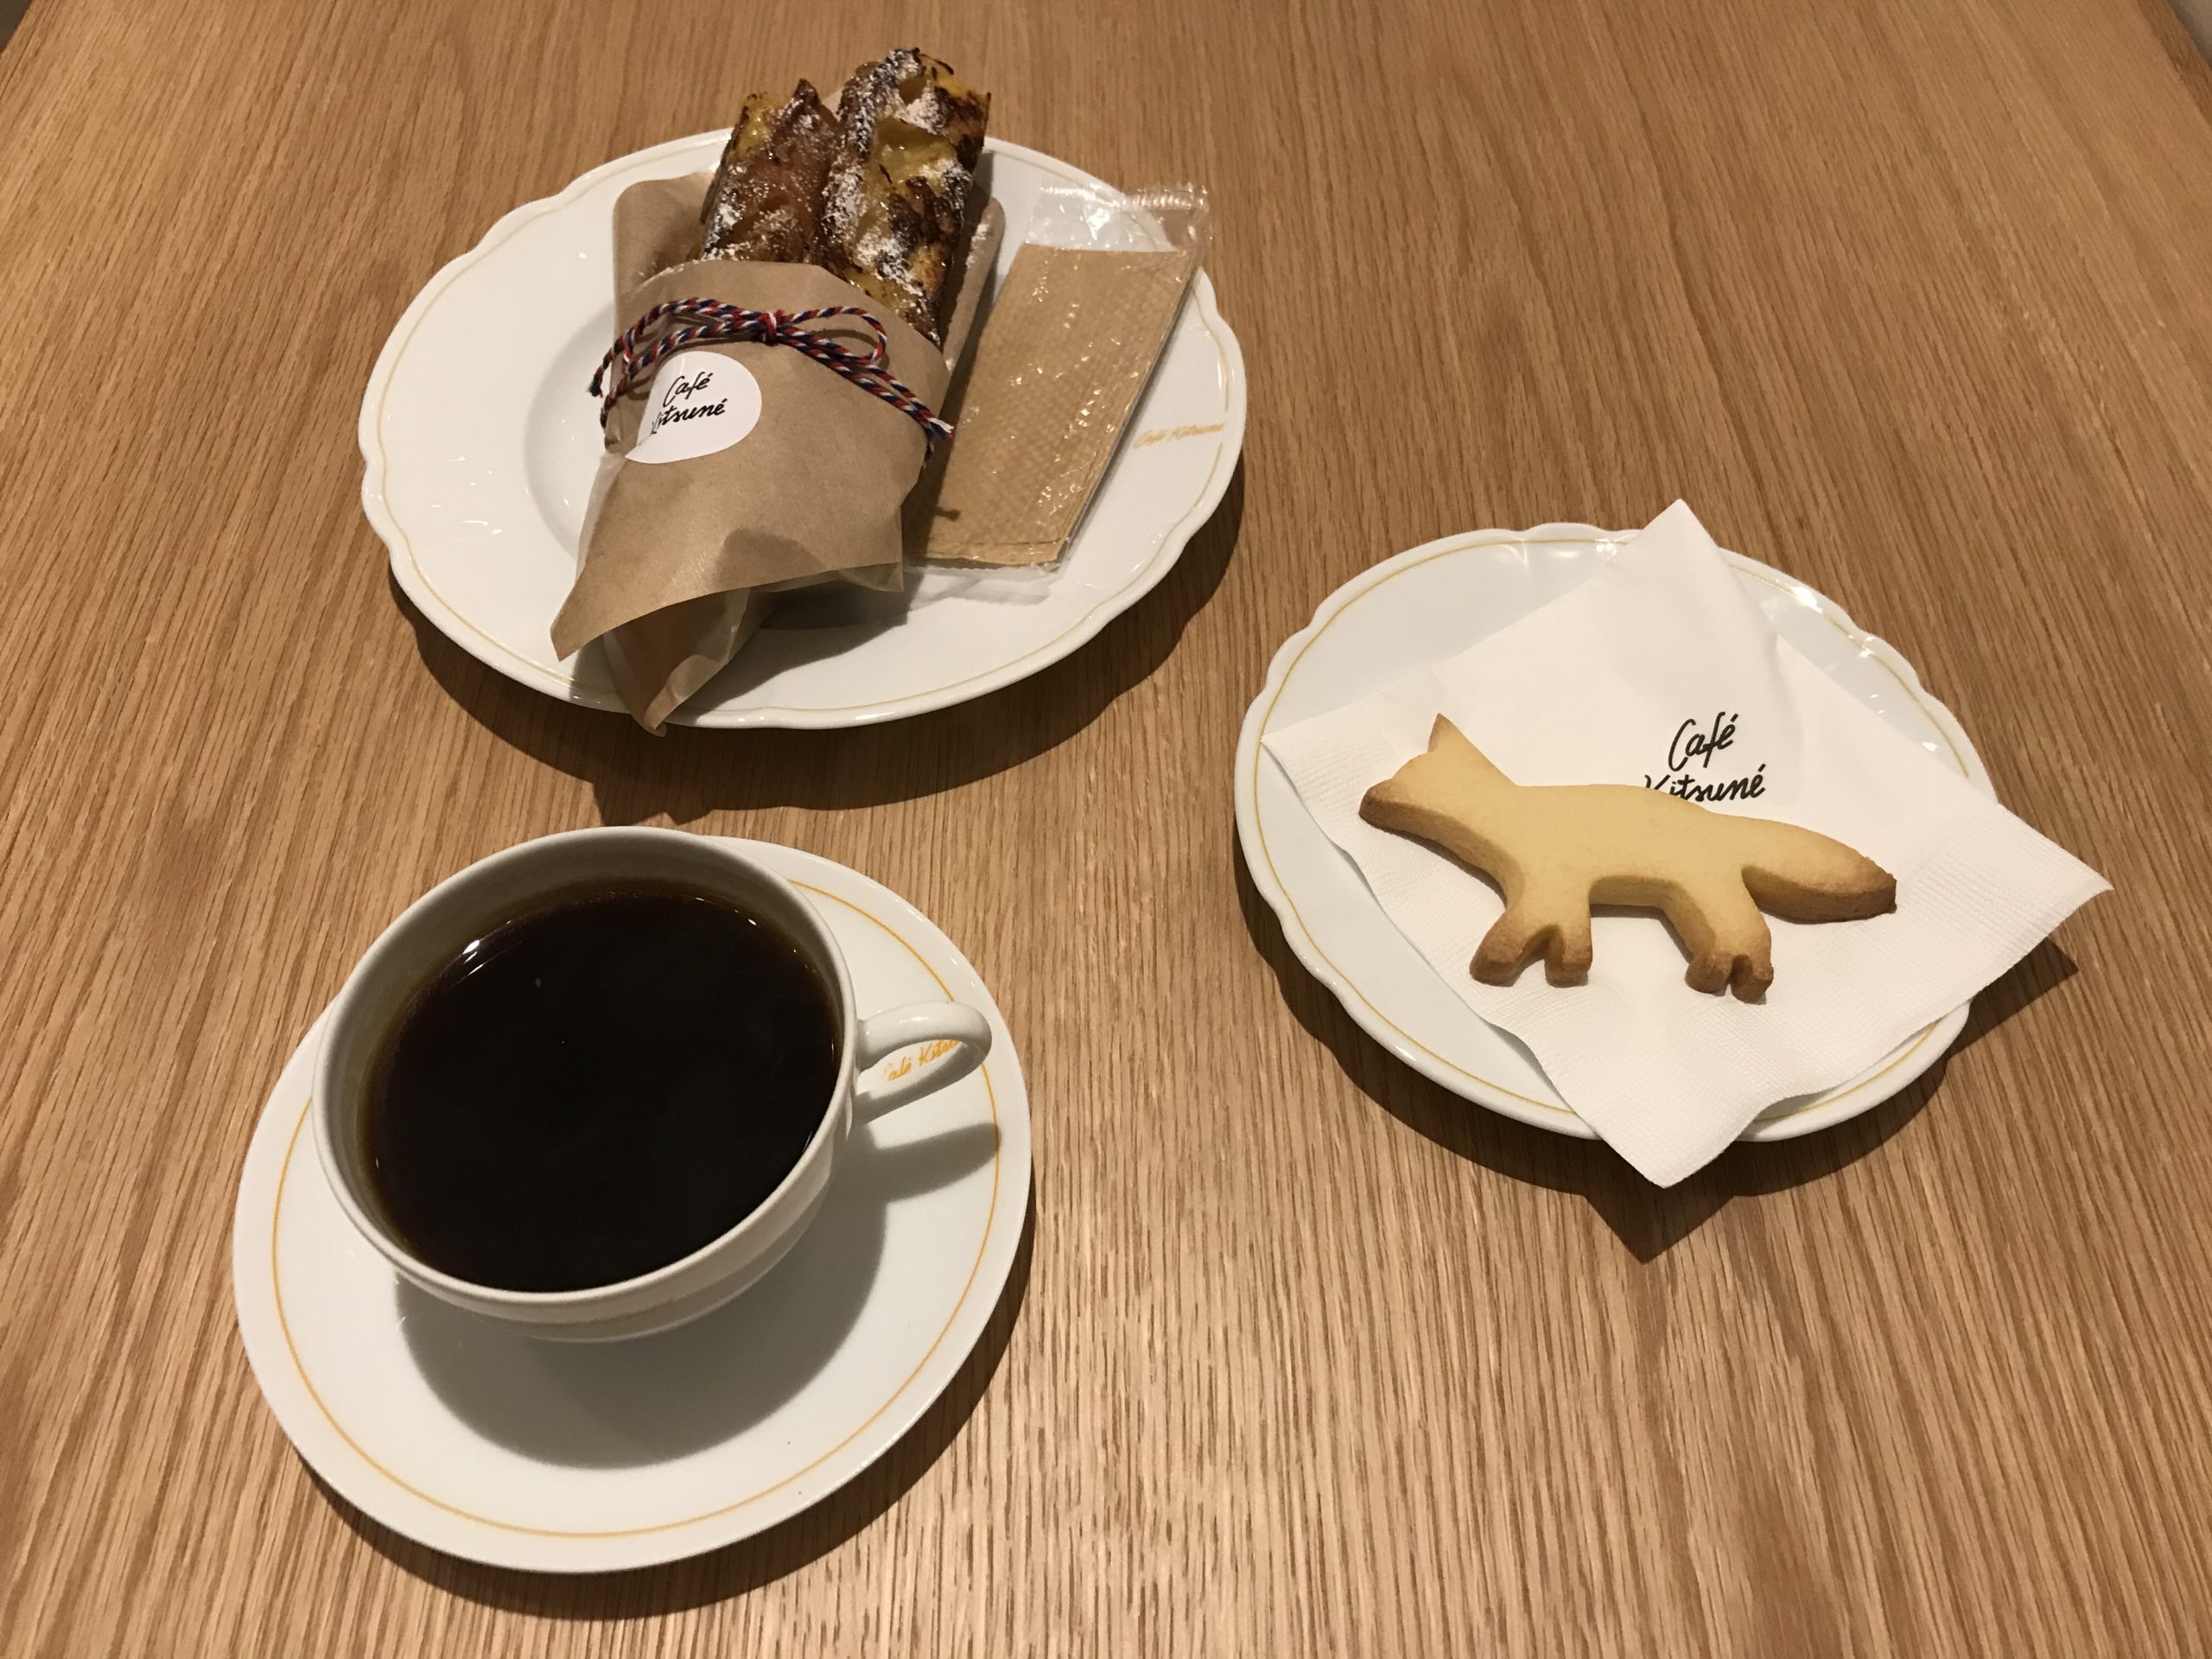 Cafe Kitsune x Casio カシオ×カフェ キツネ - 時計